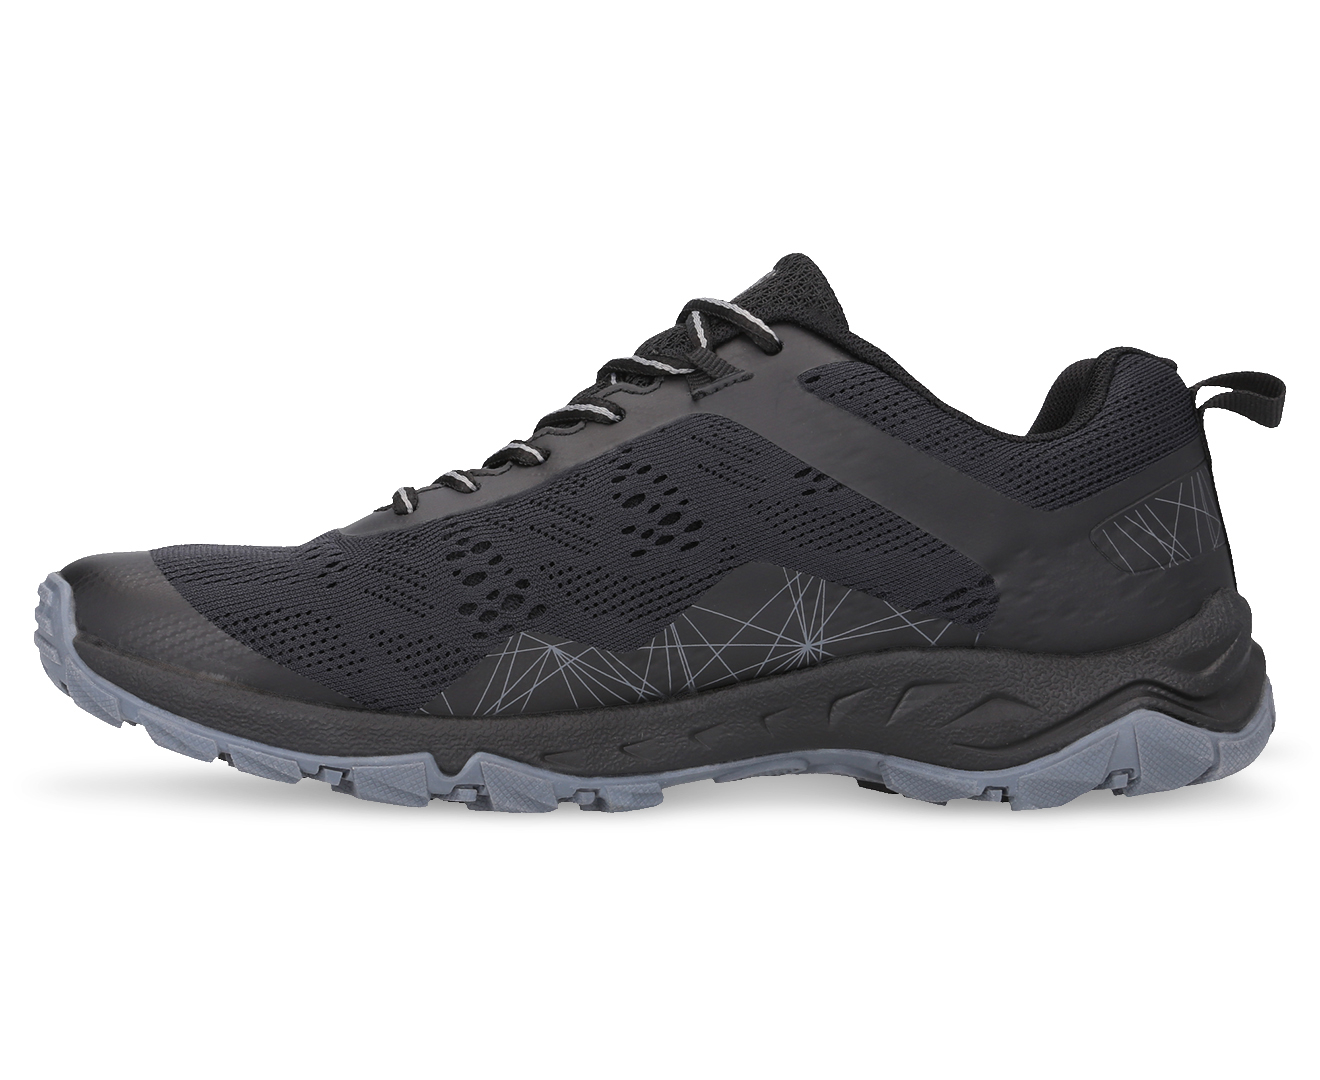 SFIDA Men's Journey Sportstyle Shoes - Black/Grey | Catch.com.au